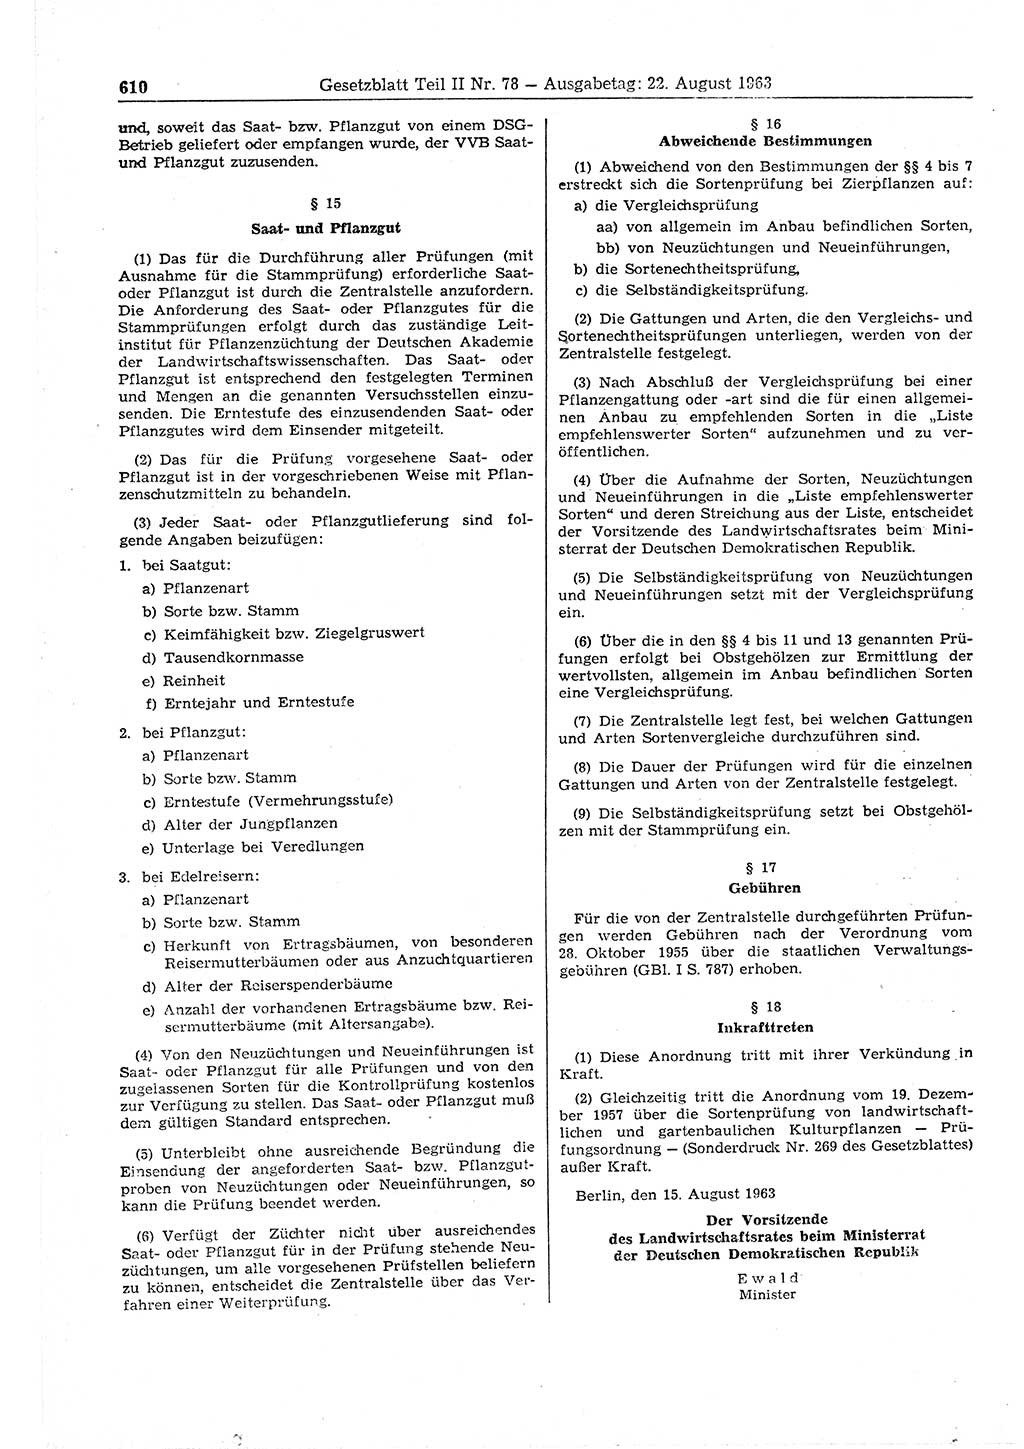 Gesetzblatt (GBl.) der Deutschen Demokratischen Republik (DDR) Teil ⅠⅠ 1963, Seite 610 (GBl. DDR ⅠⅠ 1963, S. 610)